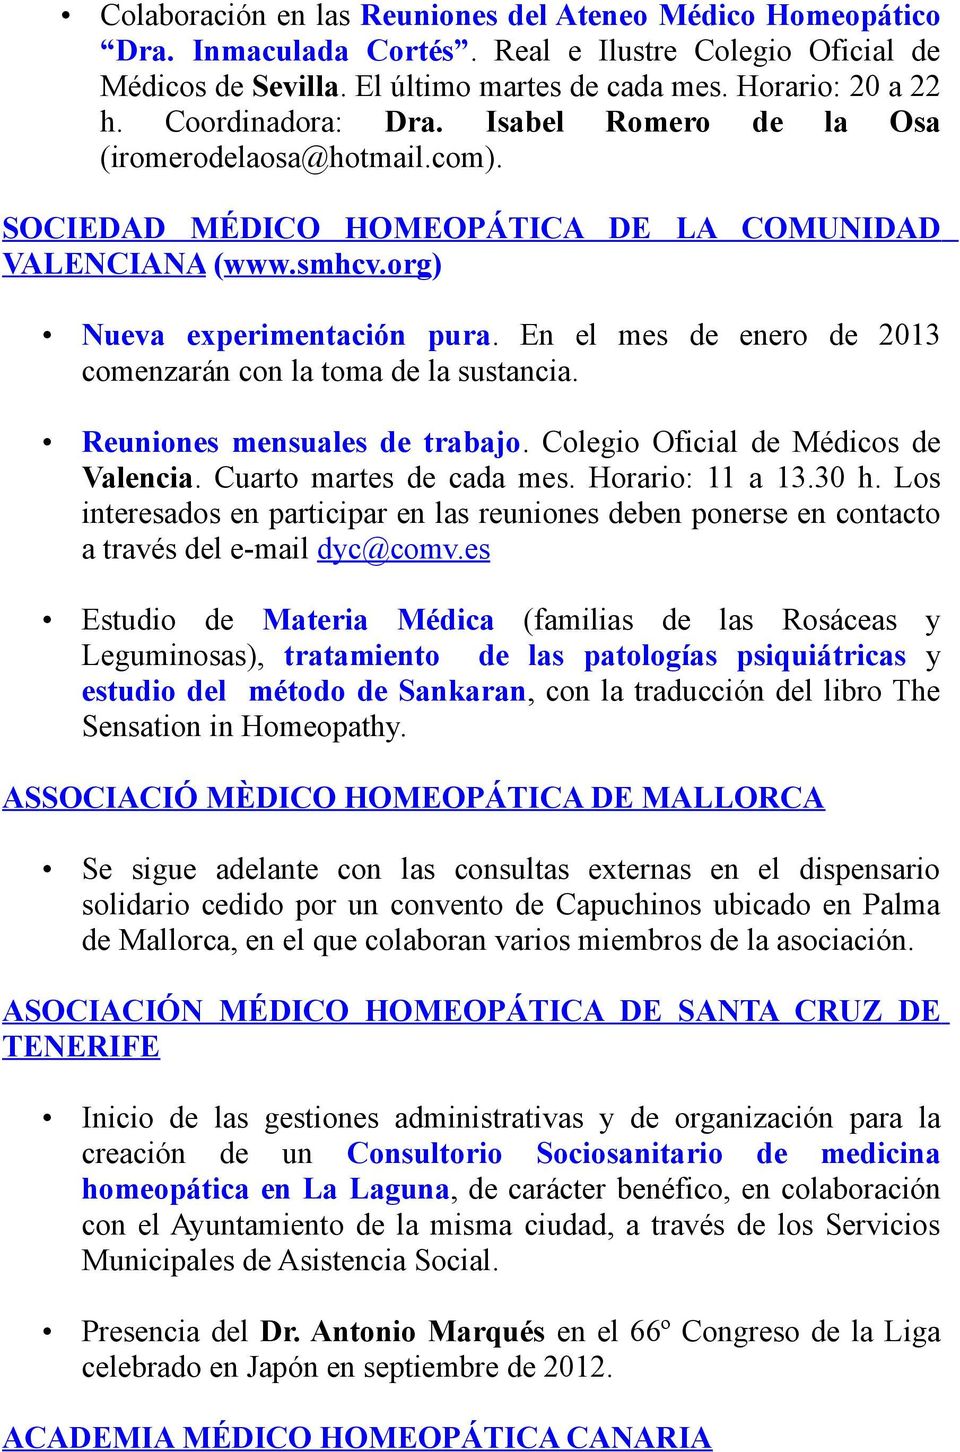 En el mes de enero de 2013 comenzarán con la toma de la sustancia. Reuniones mensuales de trabajo. Colegio Oficial de Médicos de Valencia. Cuarto martes de cada mes. Horario: 11 a 13.30 h.